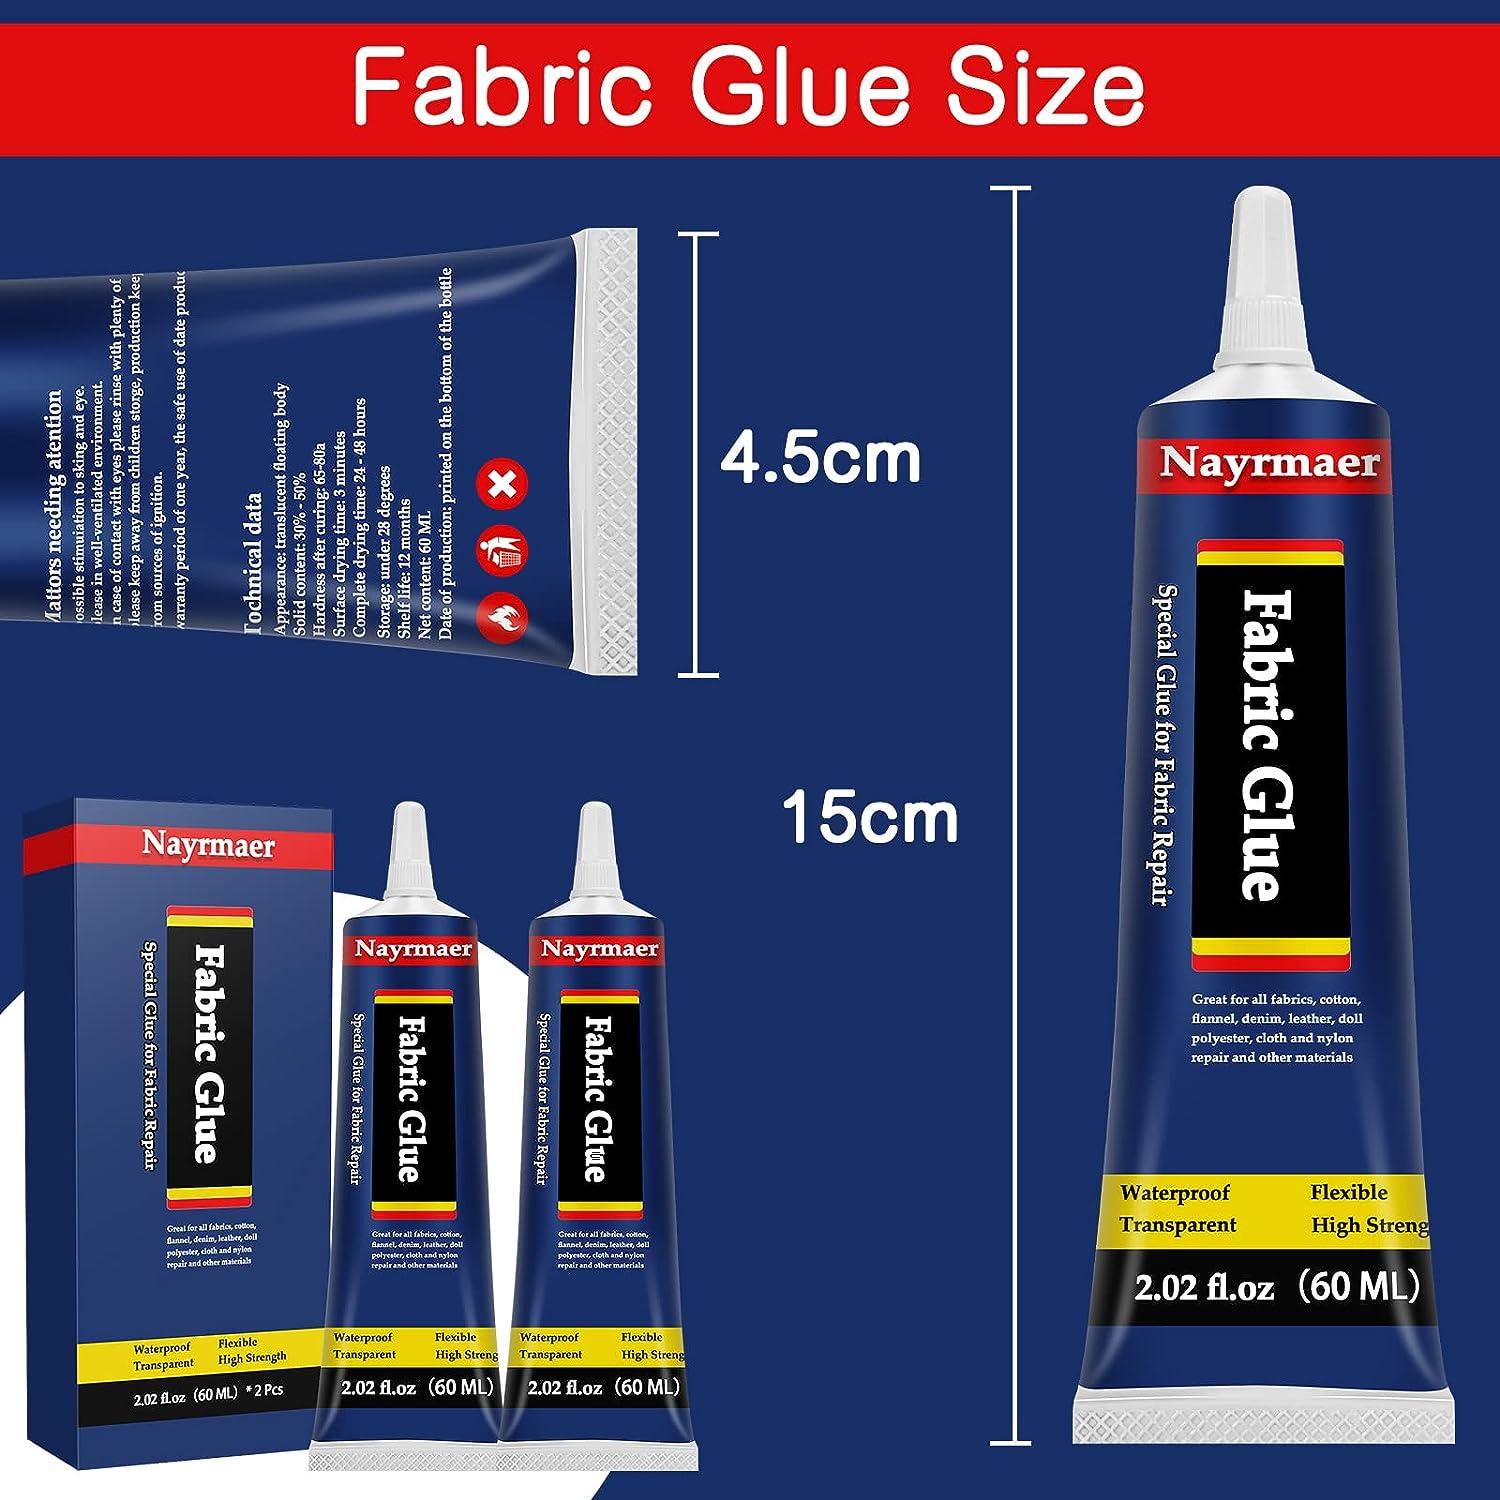  50ML Quick Fix Bonding Fabric Glue, Garment Repair